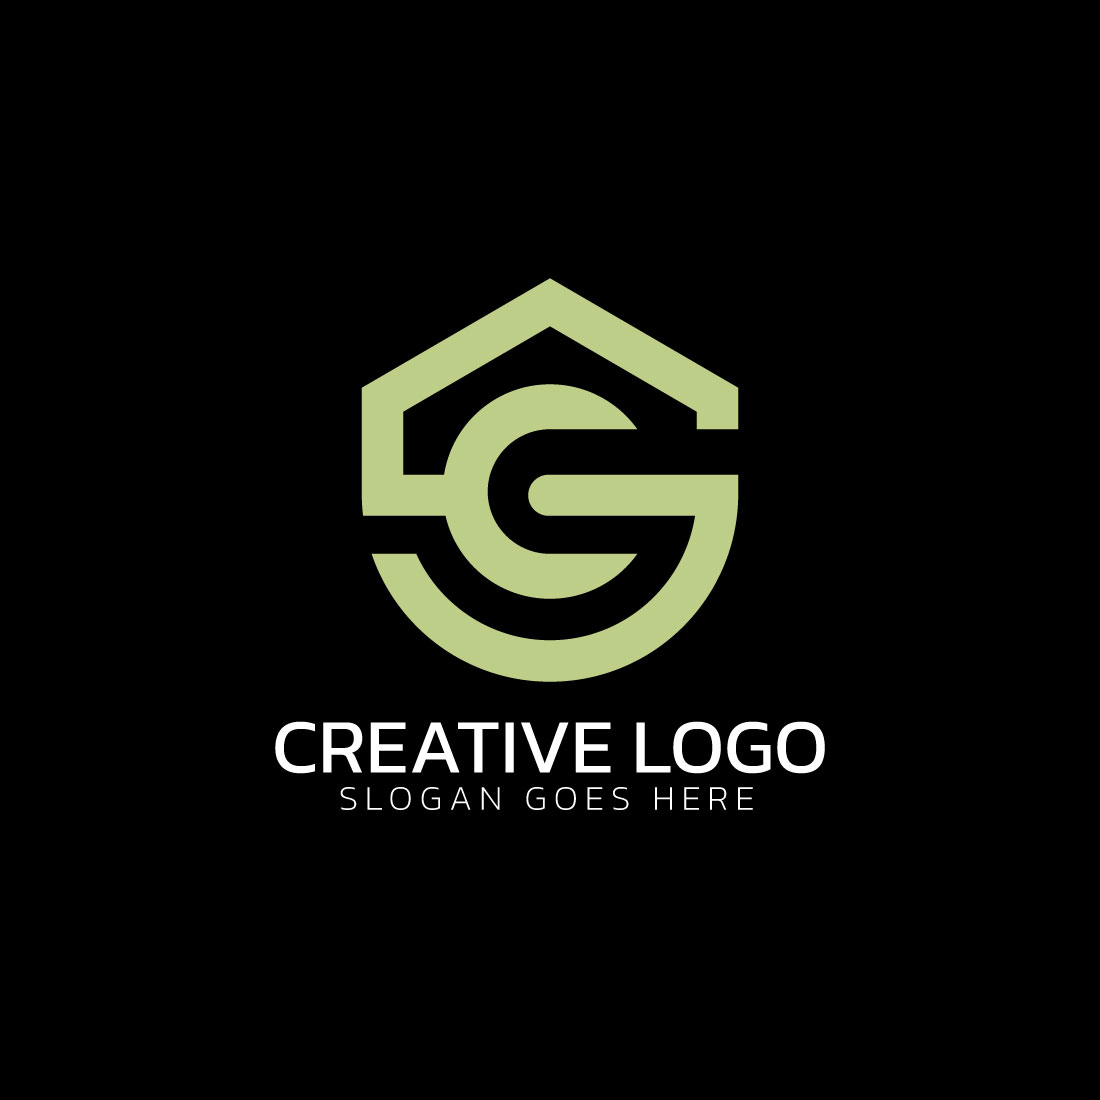 SC Letter logo, CS Letter logo preview image.